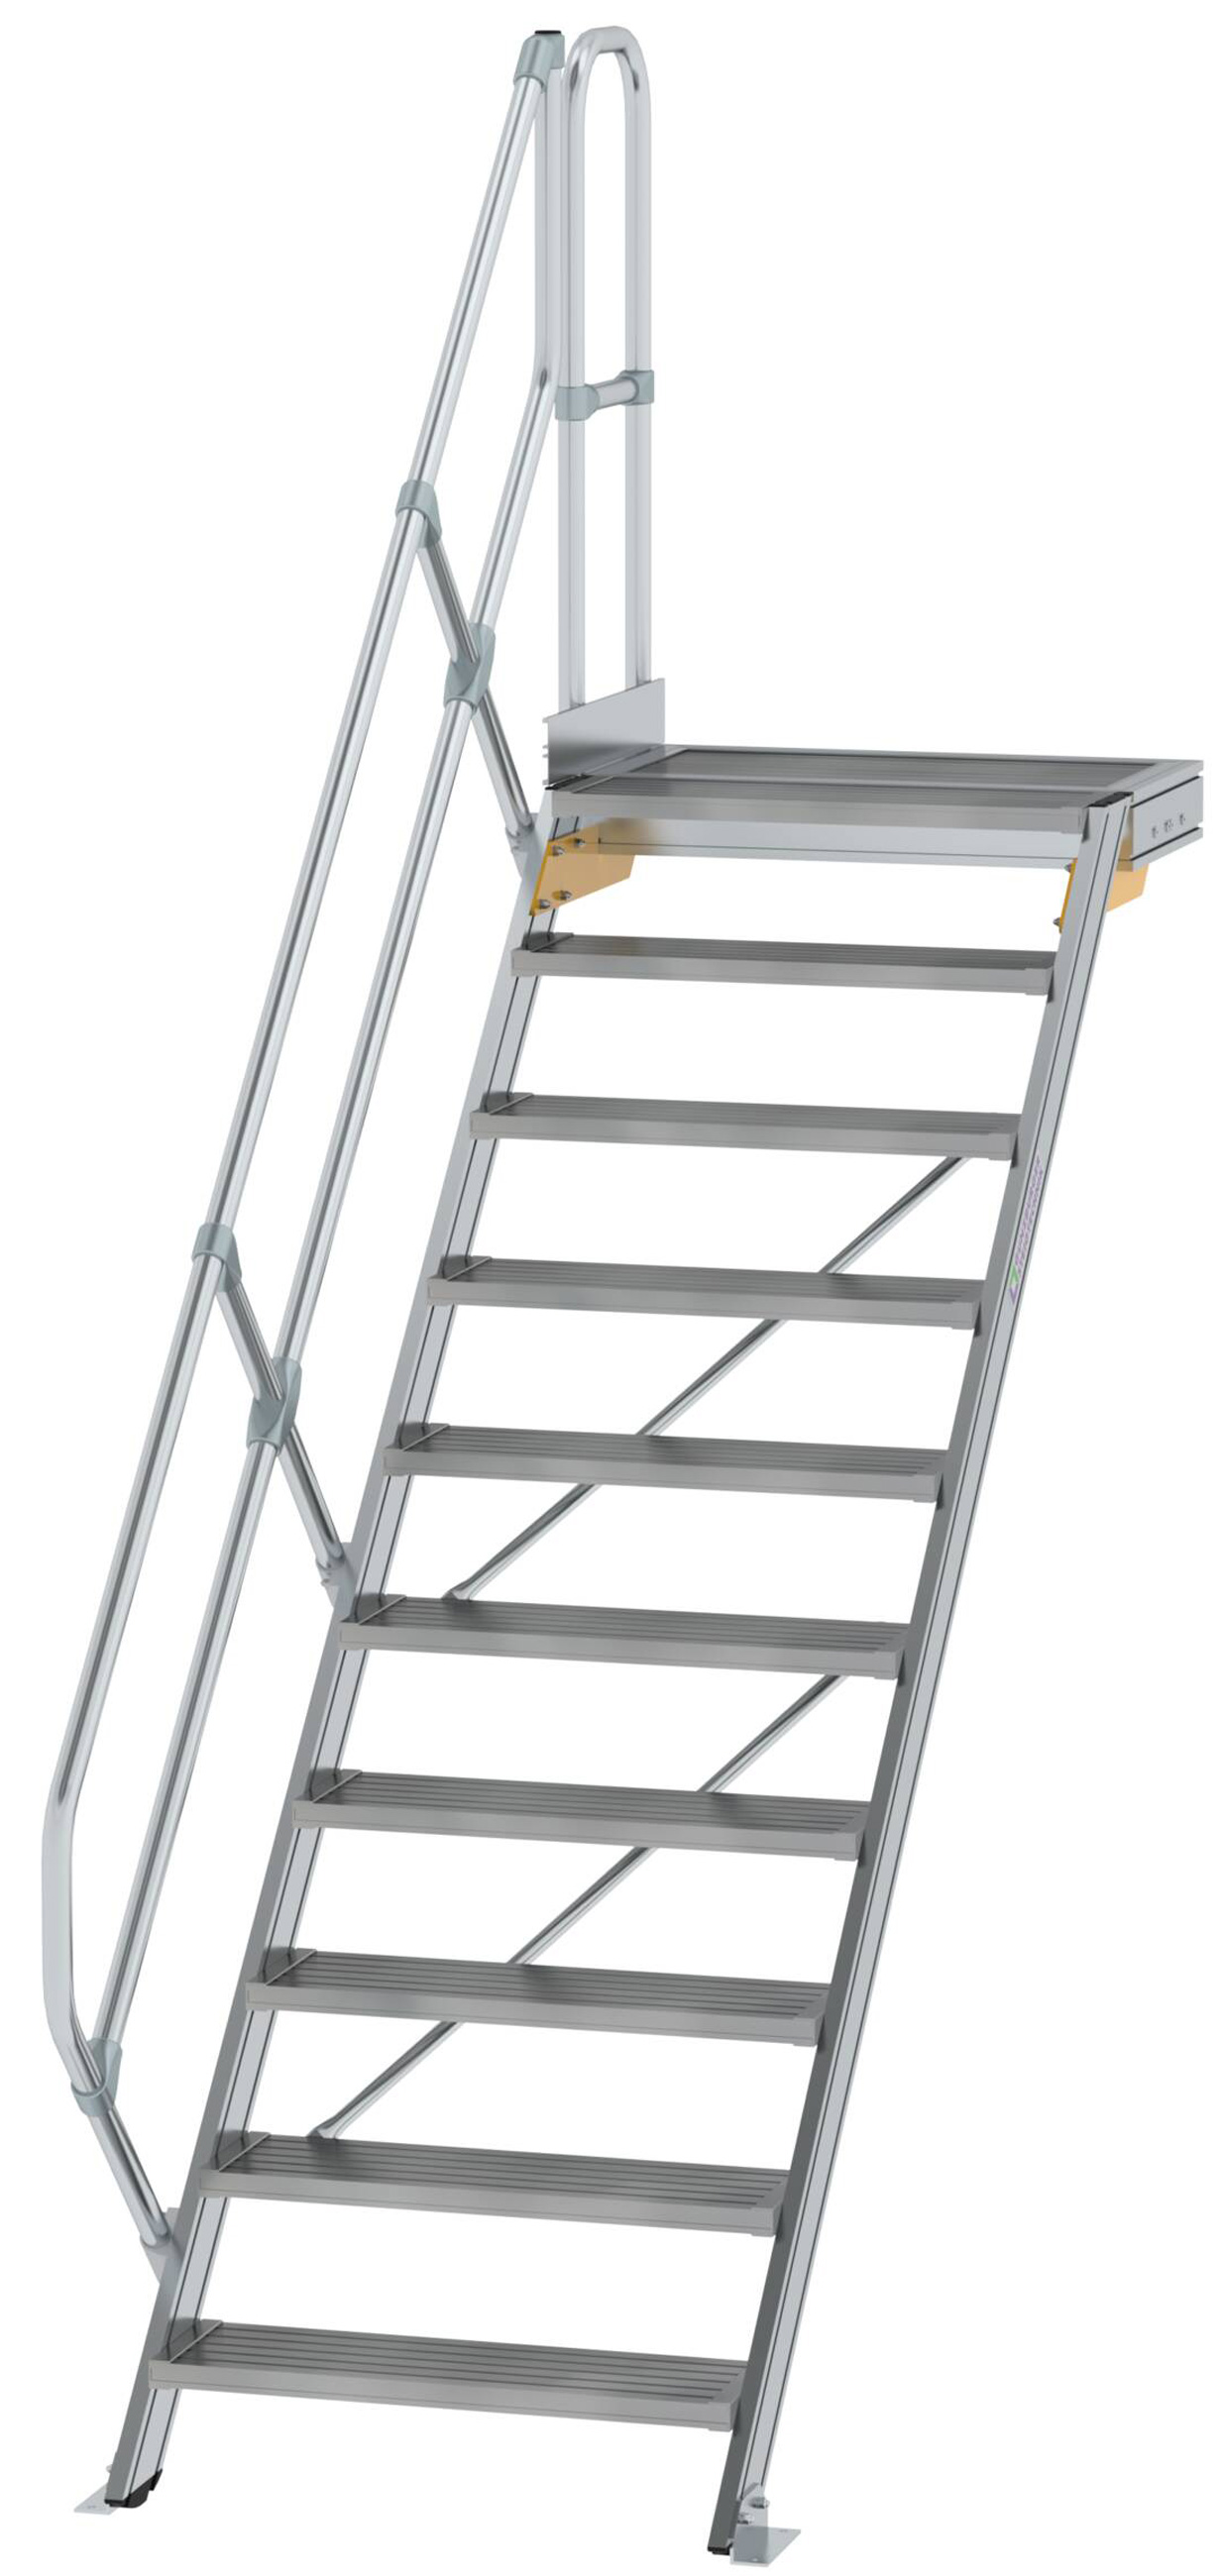 Günzburger Podesttreppe 45° 10 Stufen - 800 mm breit Alutreppe mit einem Handlauf - Stufenausführung Alu geriffelt (GB-600450) Bild-01